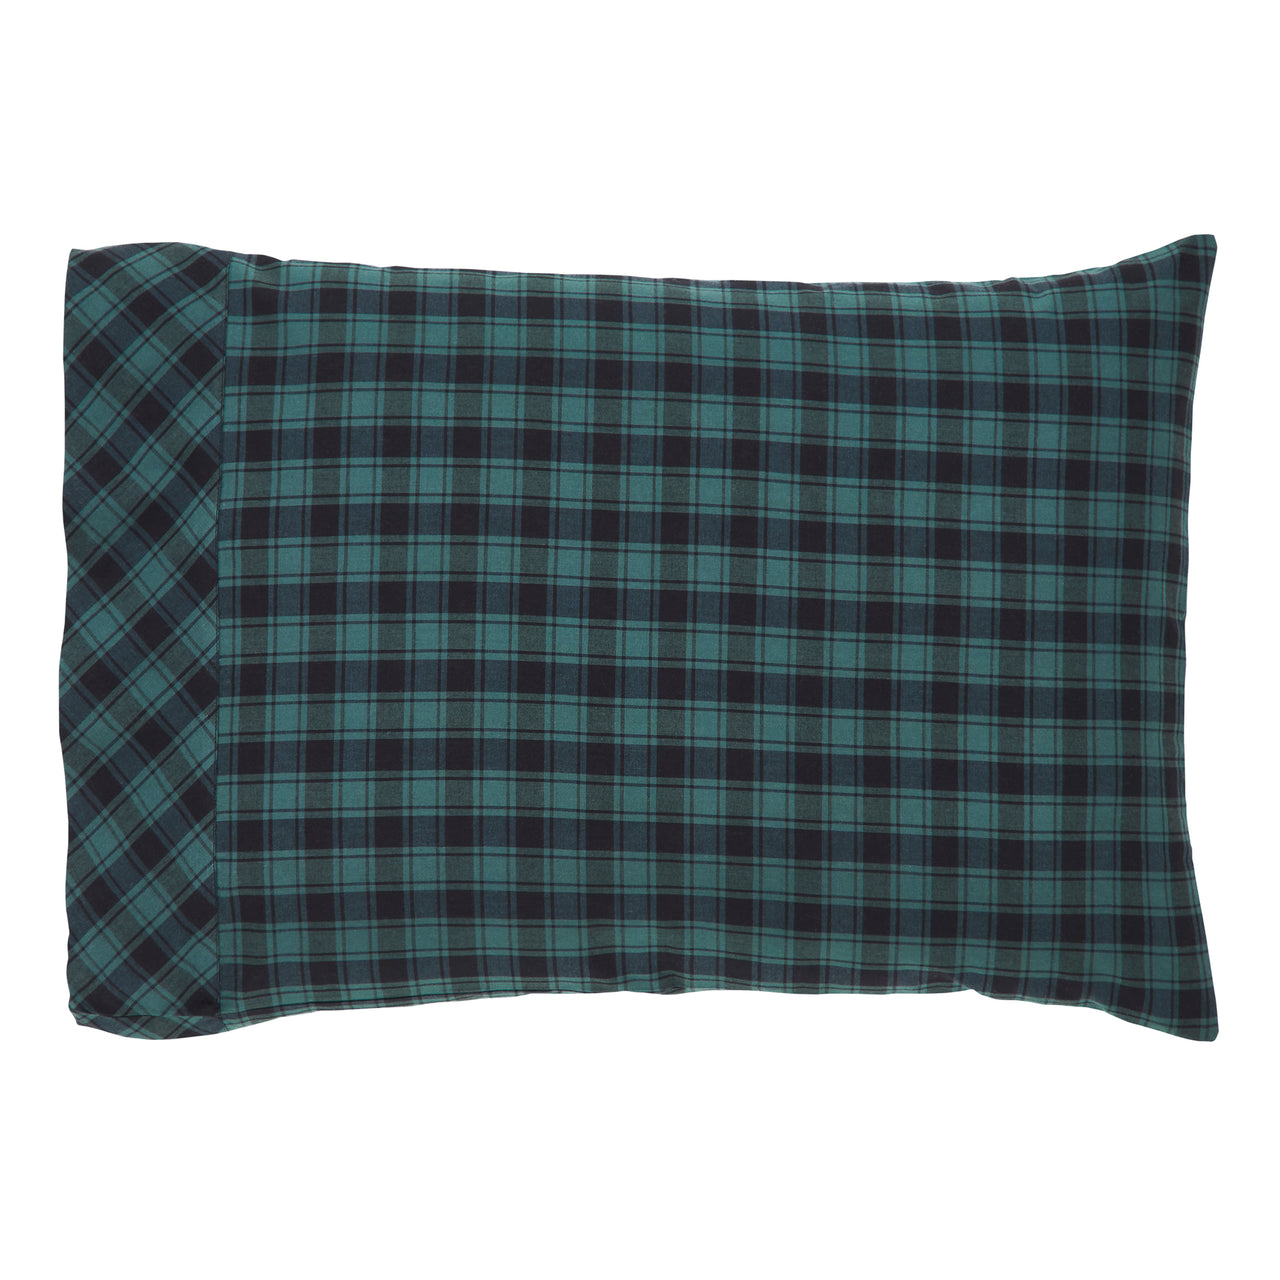 Pine Grove Standard Pillow Case Set of 2 21x30 VHC Brands